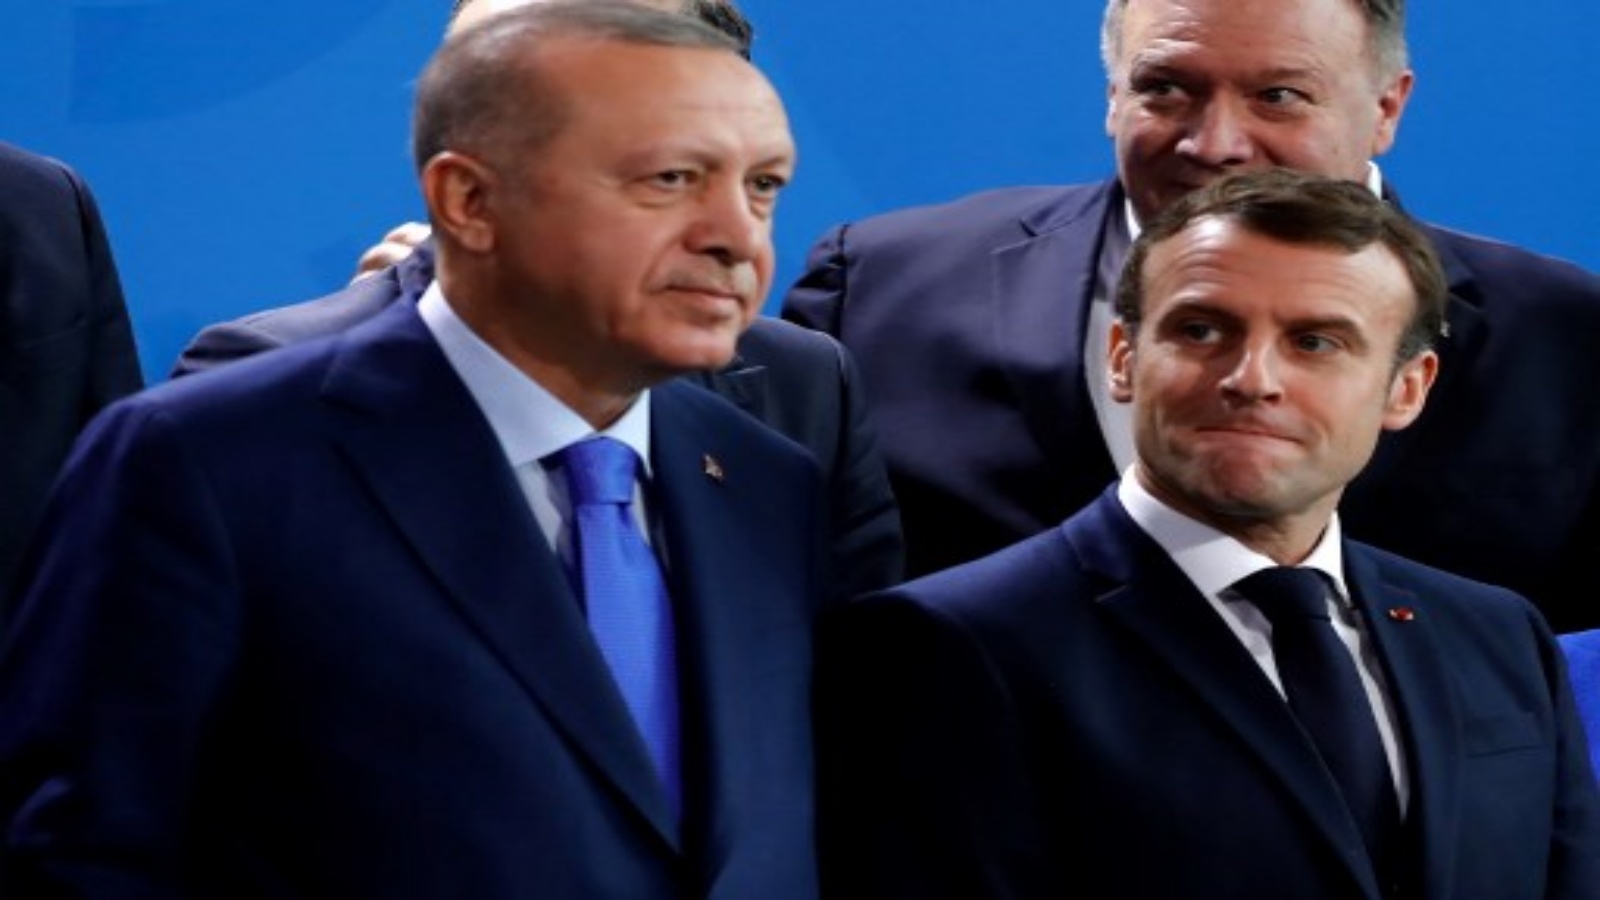 تظهر هذه الصورة التي التقطت في 19 يناير 2020 الرئيس التركي رجب طيب أردوغان (إلى اليسار) والرئيس الفرنسي إيمانويل ماكرون جنبًا إلى جنب خلال قمة السلام حول ليبيا في المستشارية في برلين